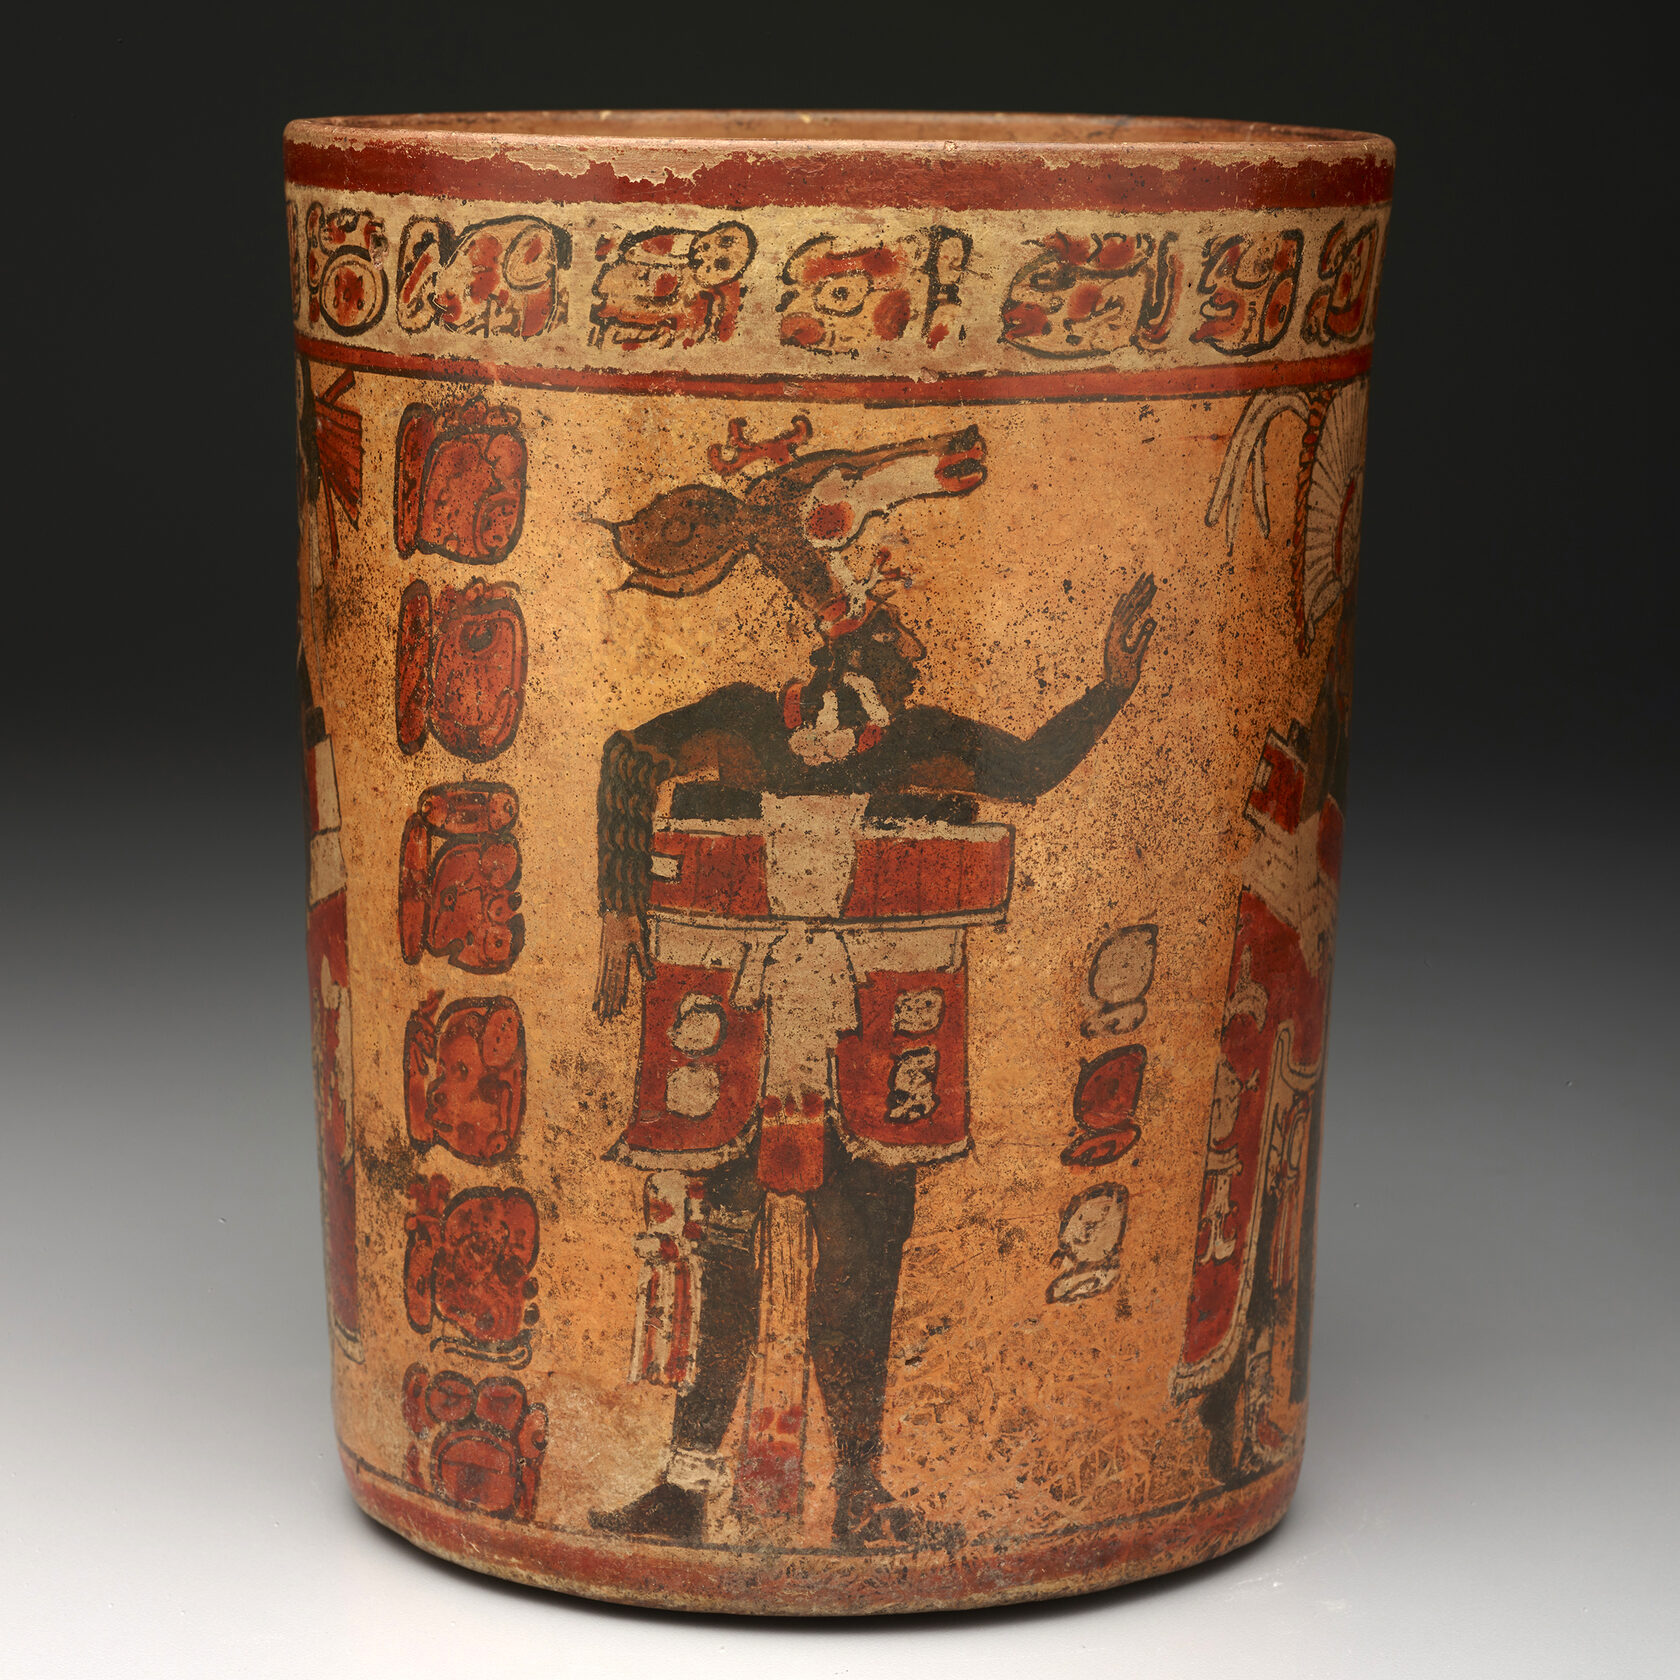 Цилиндрический сосуд со сценой игры в мяч. Майя, 682-701 гг. н.э. Коллекция Dallas Museum of Art.